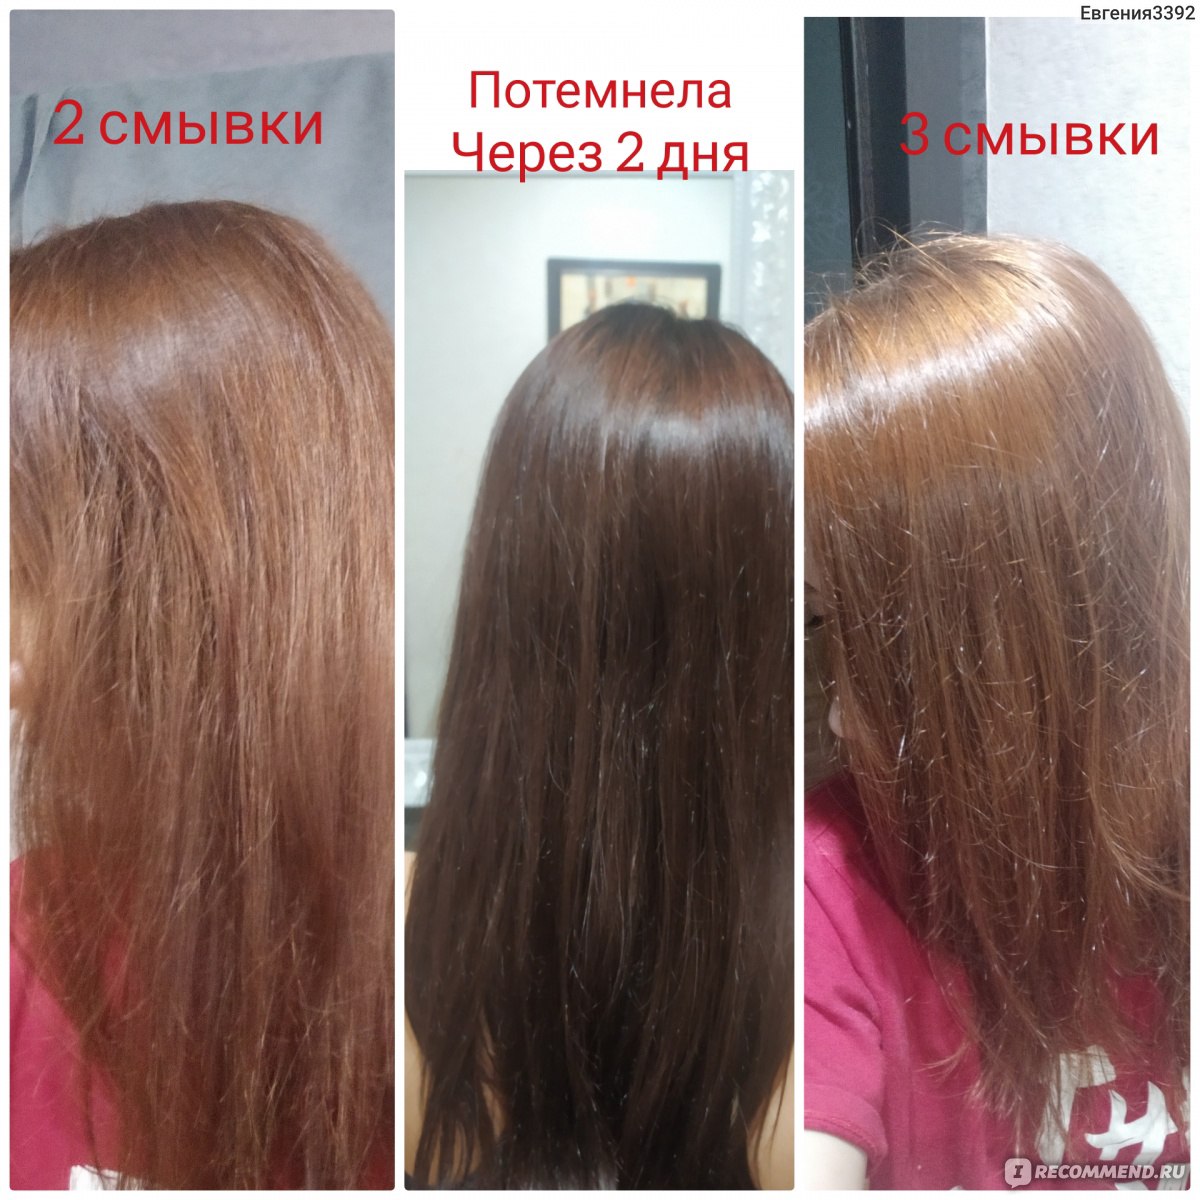 Фотографии декапирования волос из портфолио специалистов на Профи